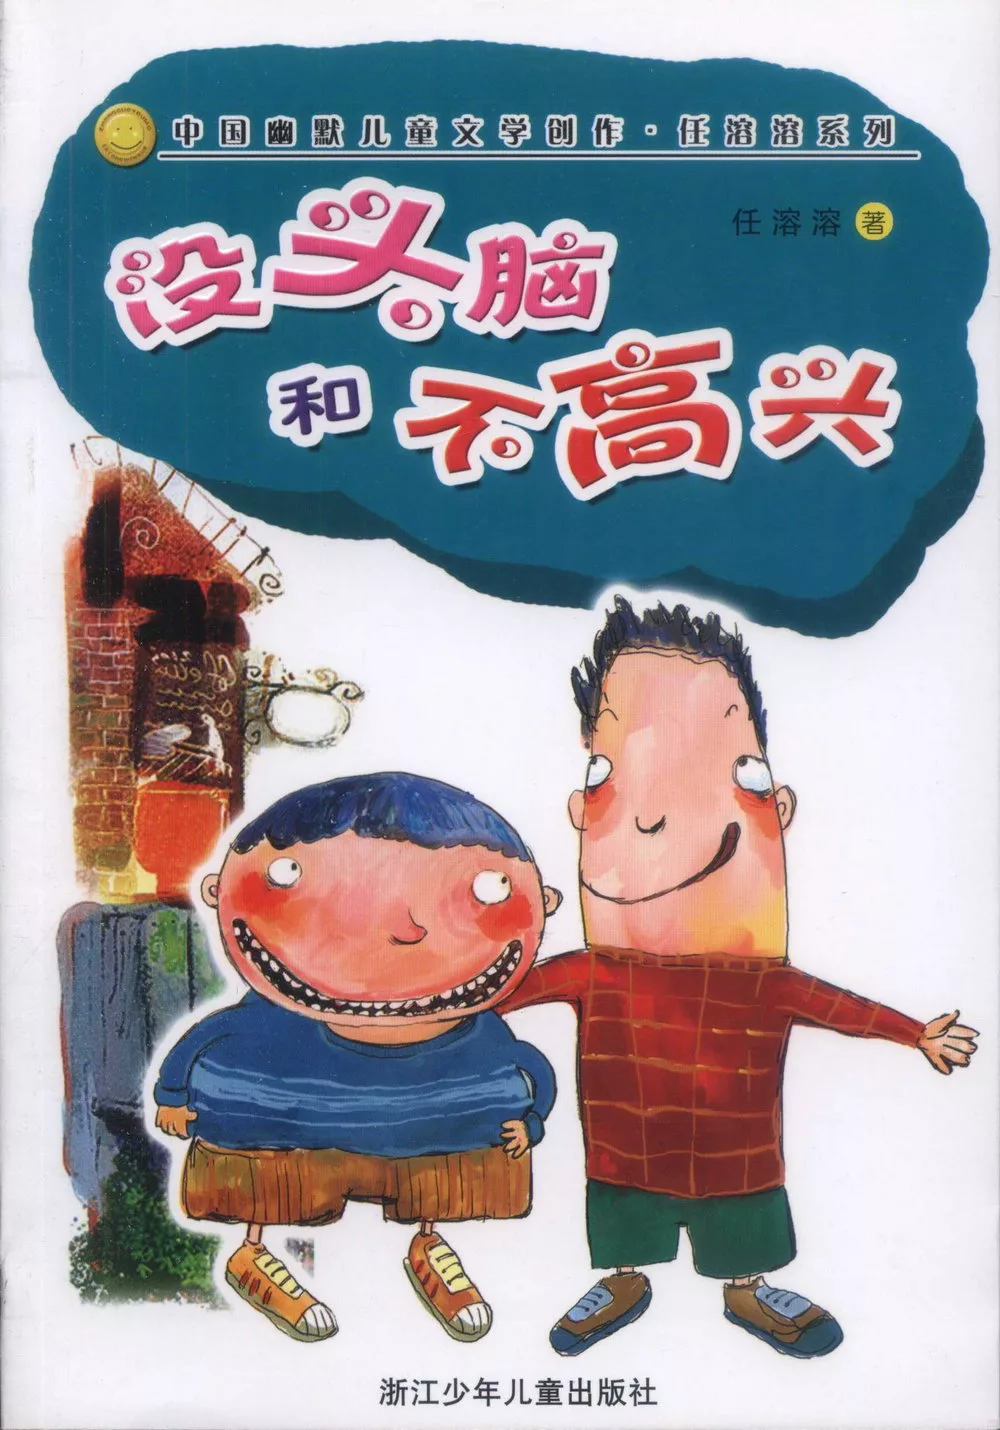 中國幽默兒童文學創作‧任溶溶系列-沒頭腦和不高興